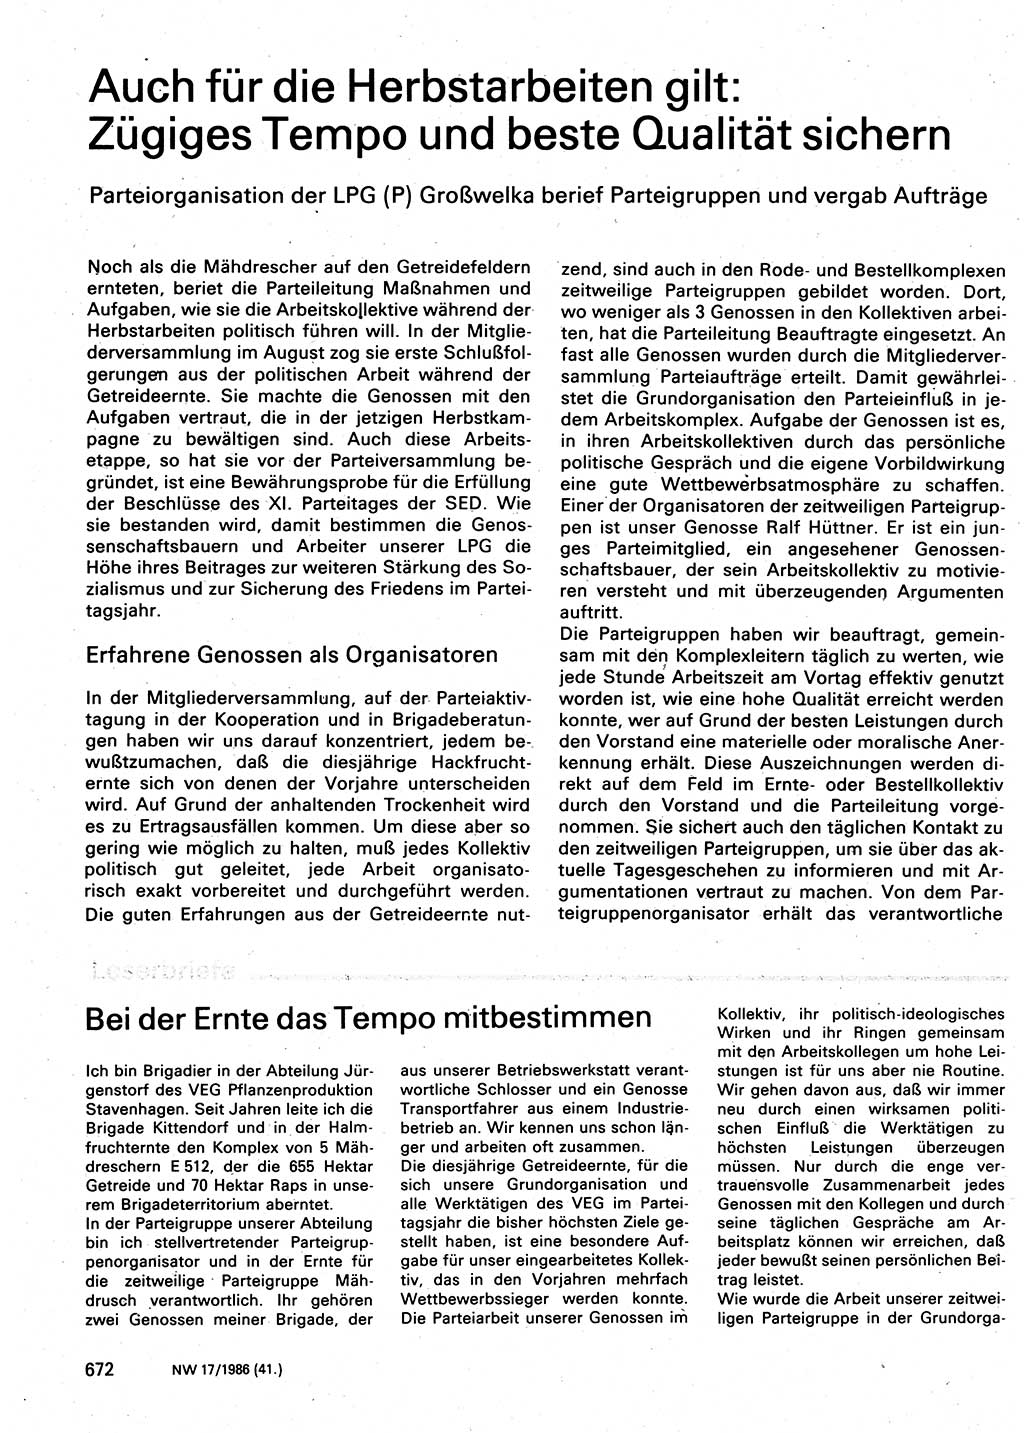 Neuer Weg (NW), Organ des Zentralkomitees (ZK) der SED (Sozialistische Einheitspartei Deutschlands) für Fragen des Parteilebens, 41. Jahrgang [Deutsche Demokratische Republik (DDR)] 1986, Seite 672 (NW ZK SED DDR 1986, S. 672)